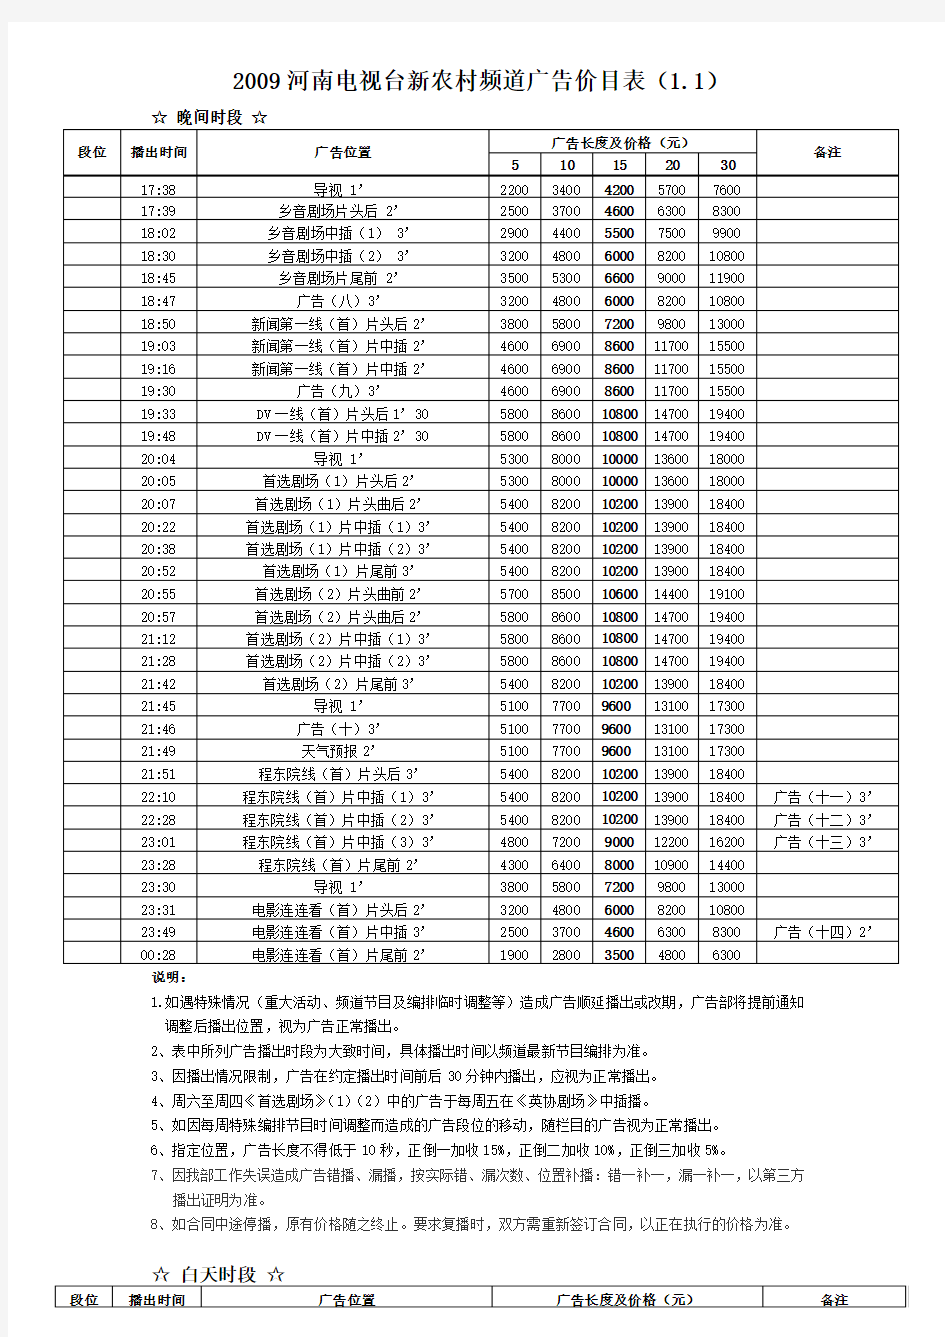 河南电视台新农村频道节目编排表(一)